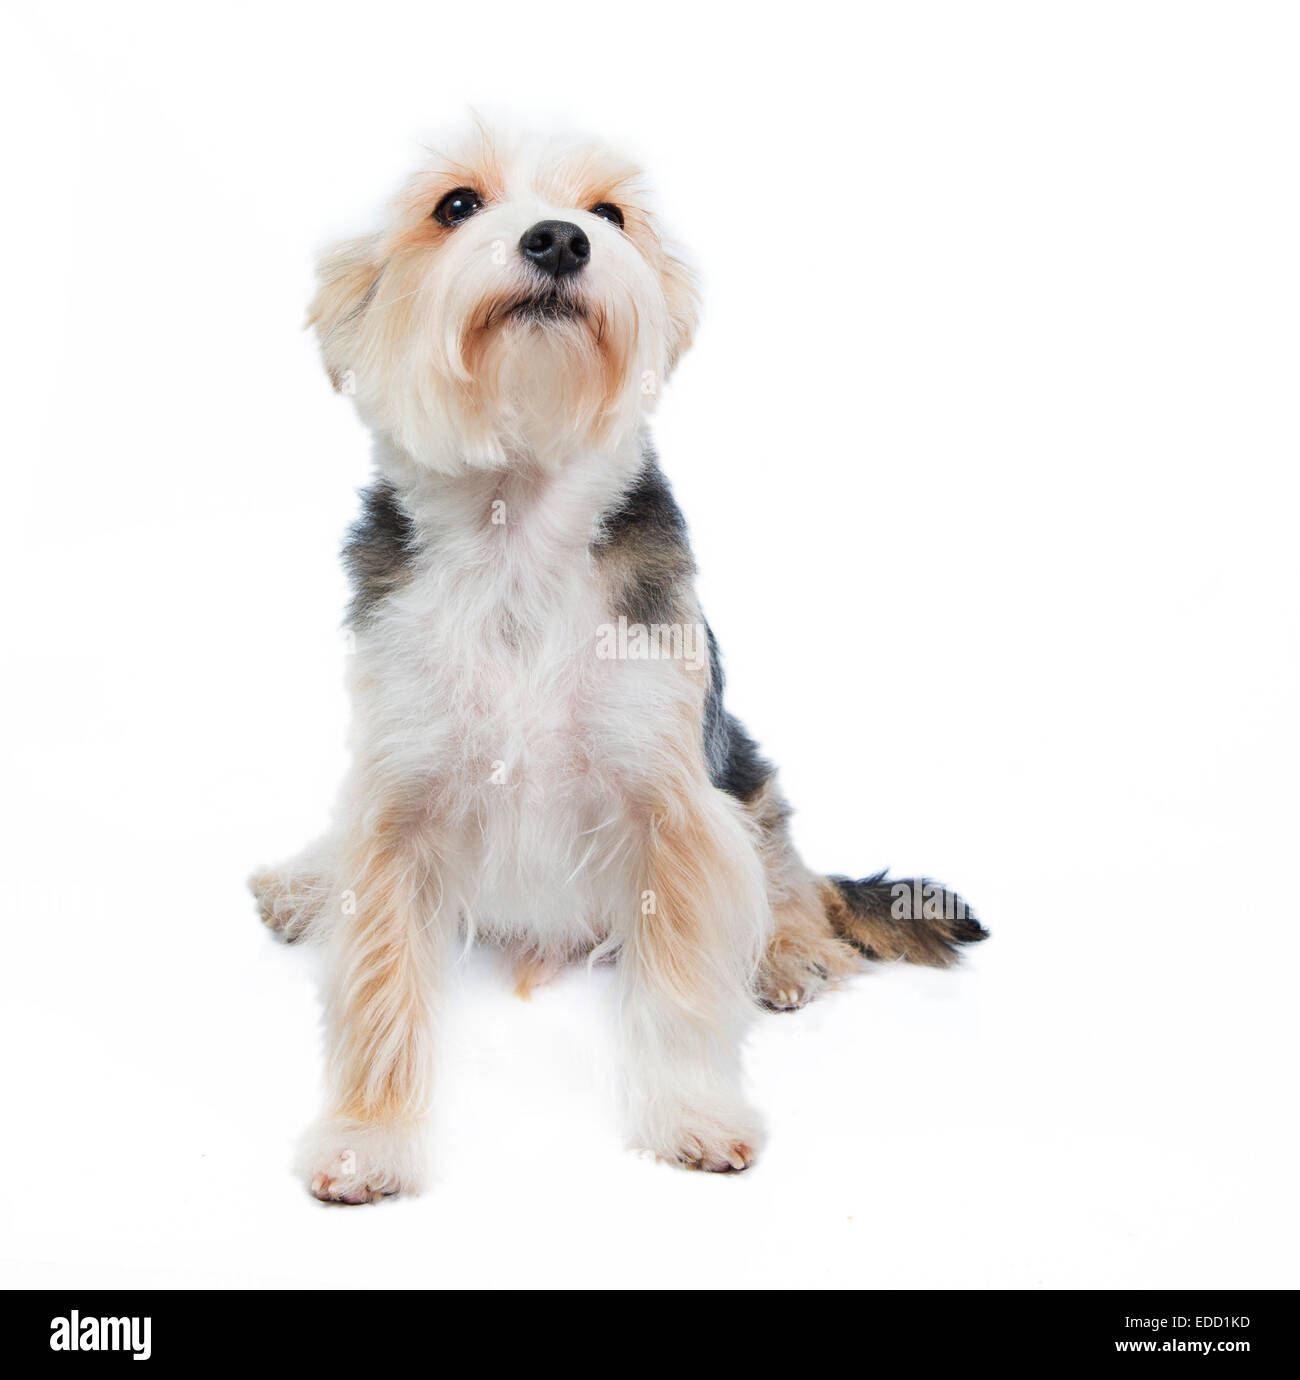 Terrier cane in studio sullo sfondo bianco chiede qualcosa Foto Stock